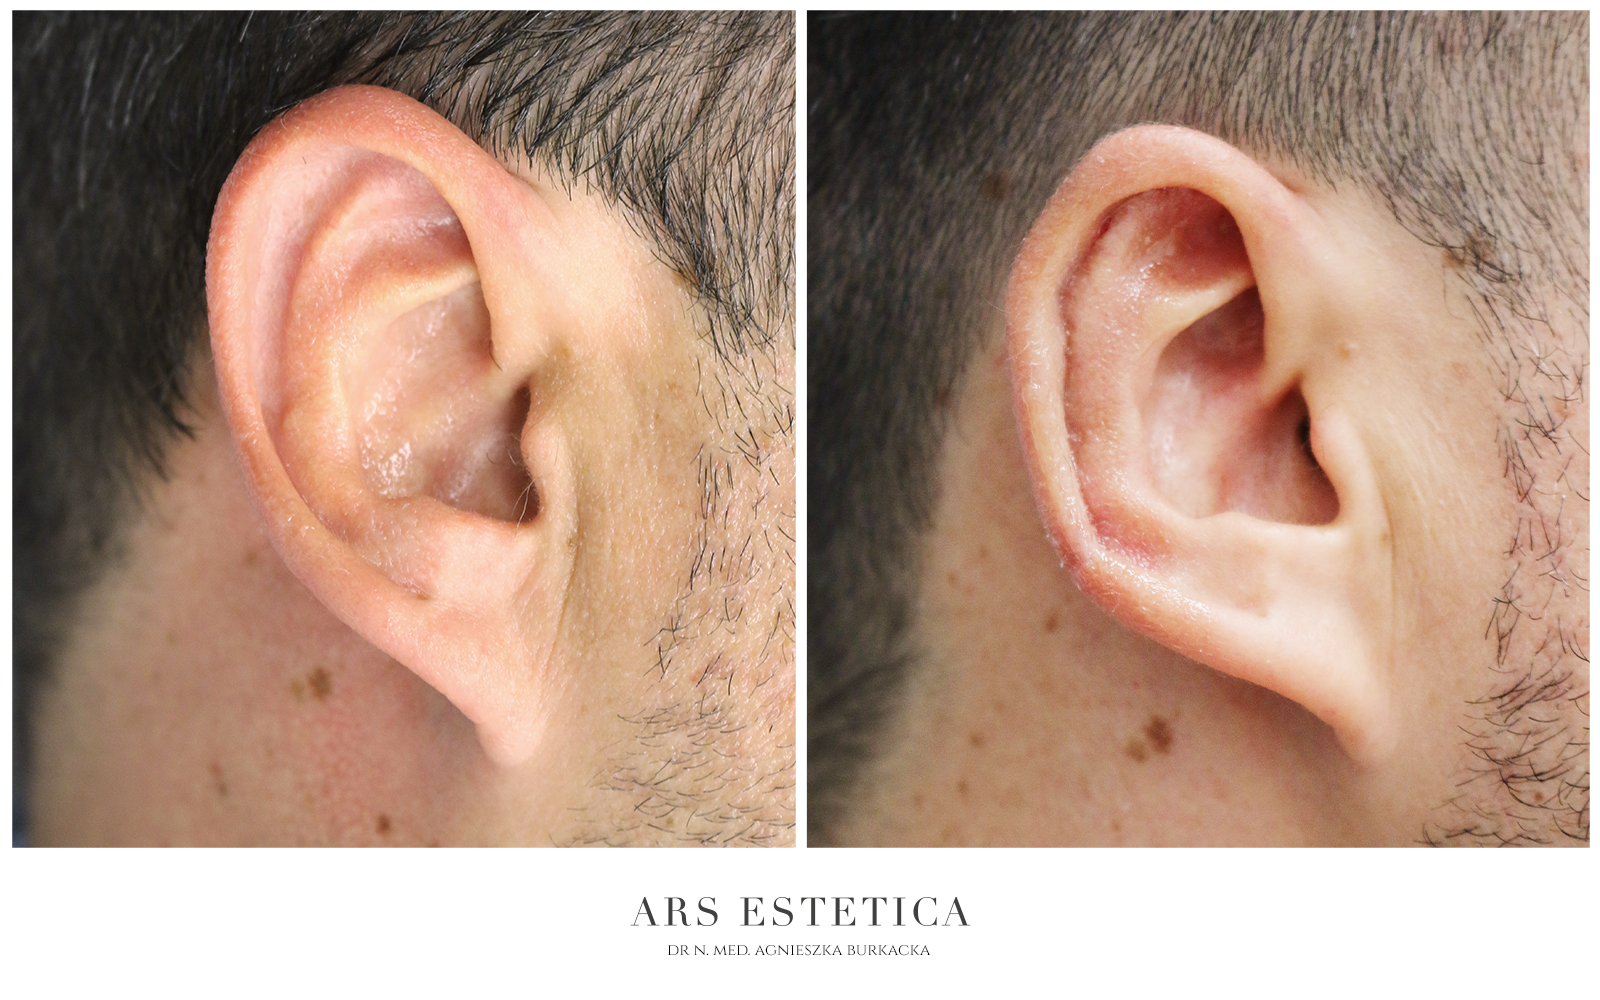 zmniejszenie uszu zdjęcia przed i po